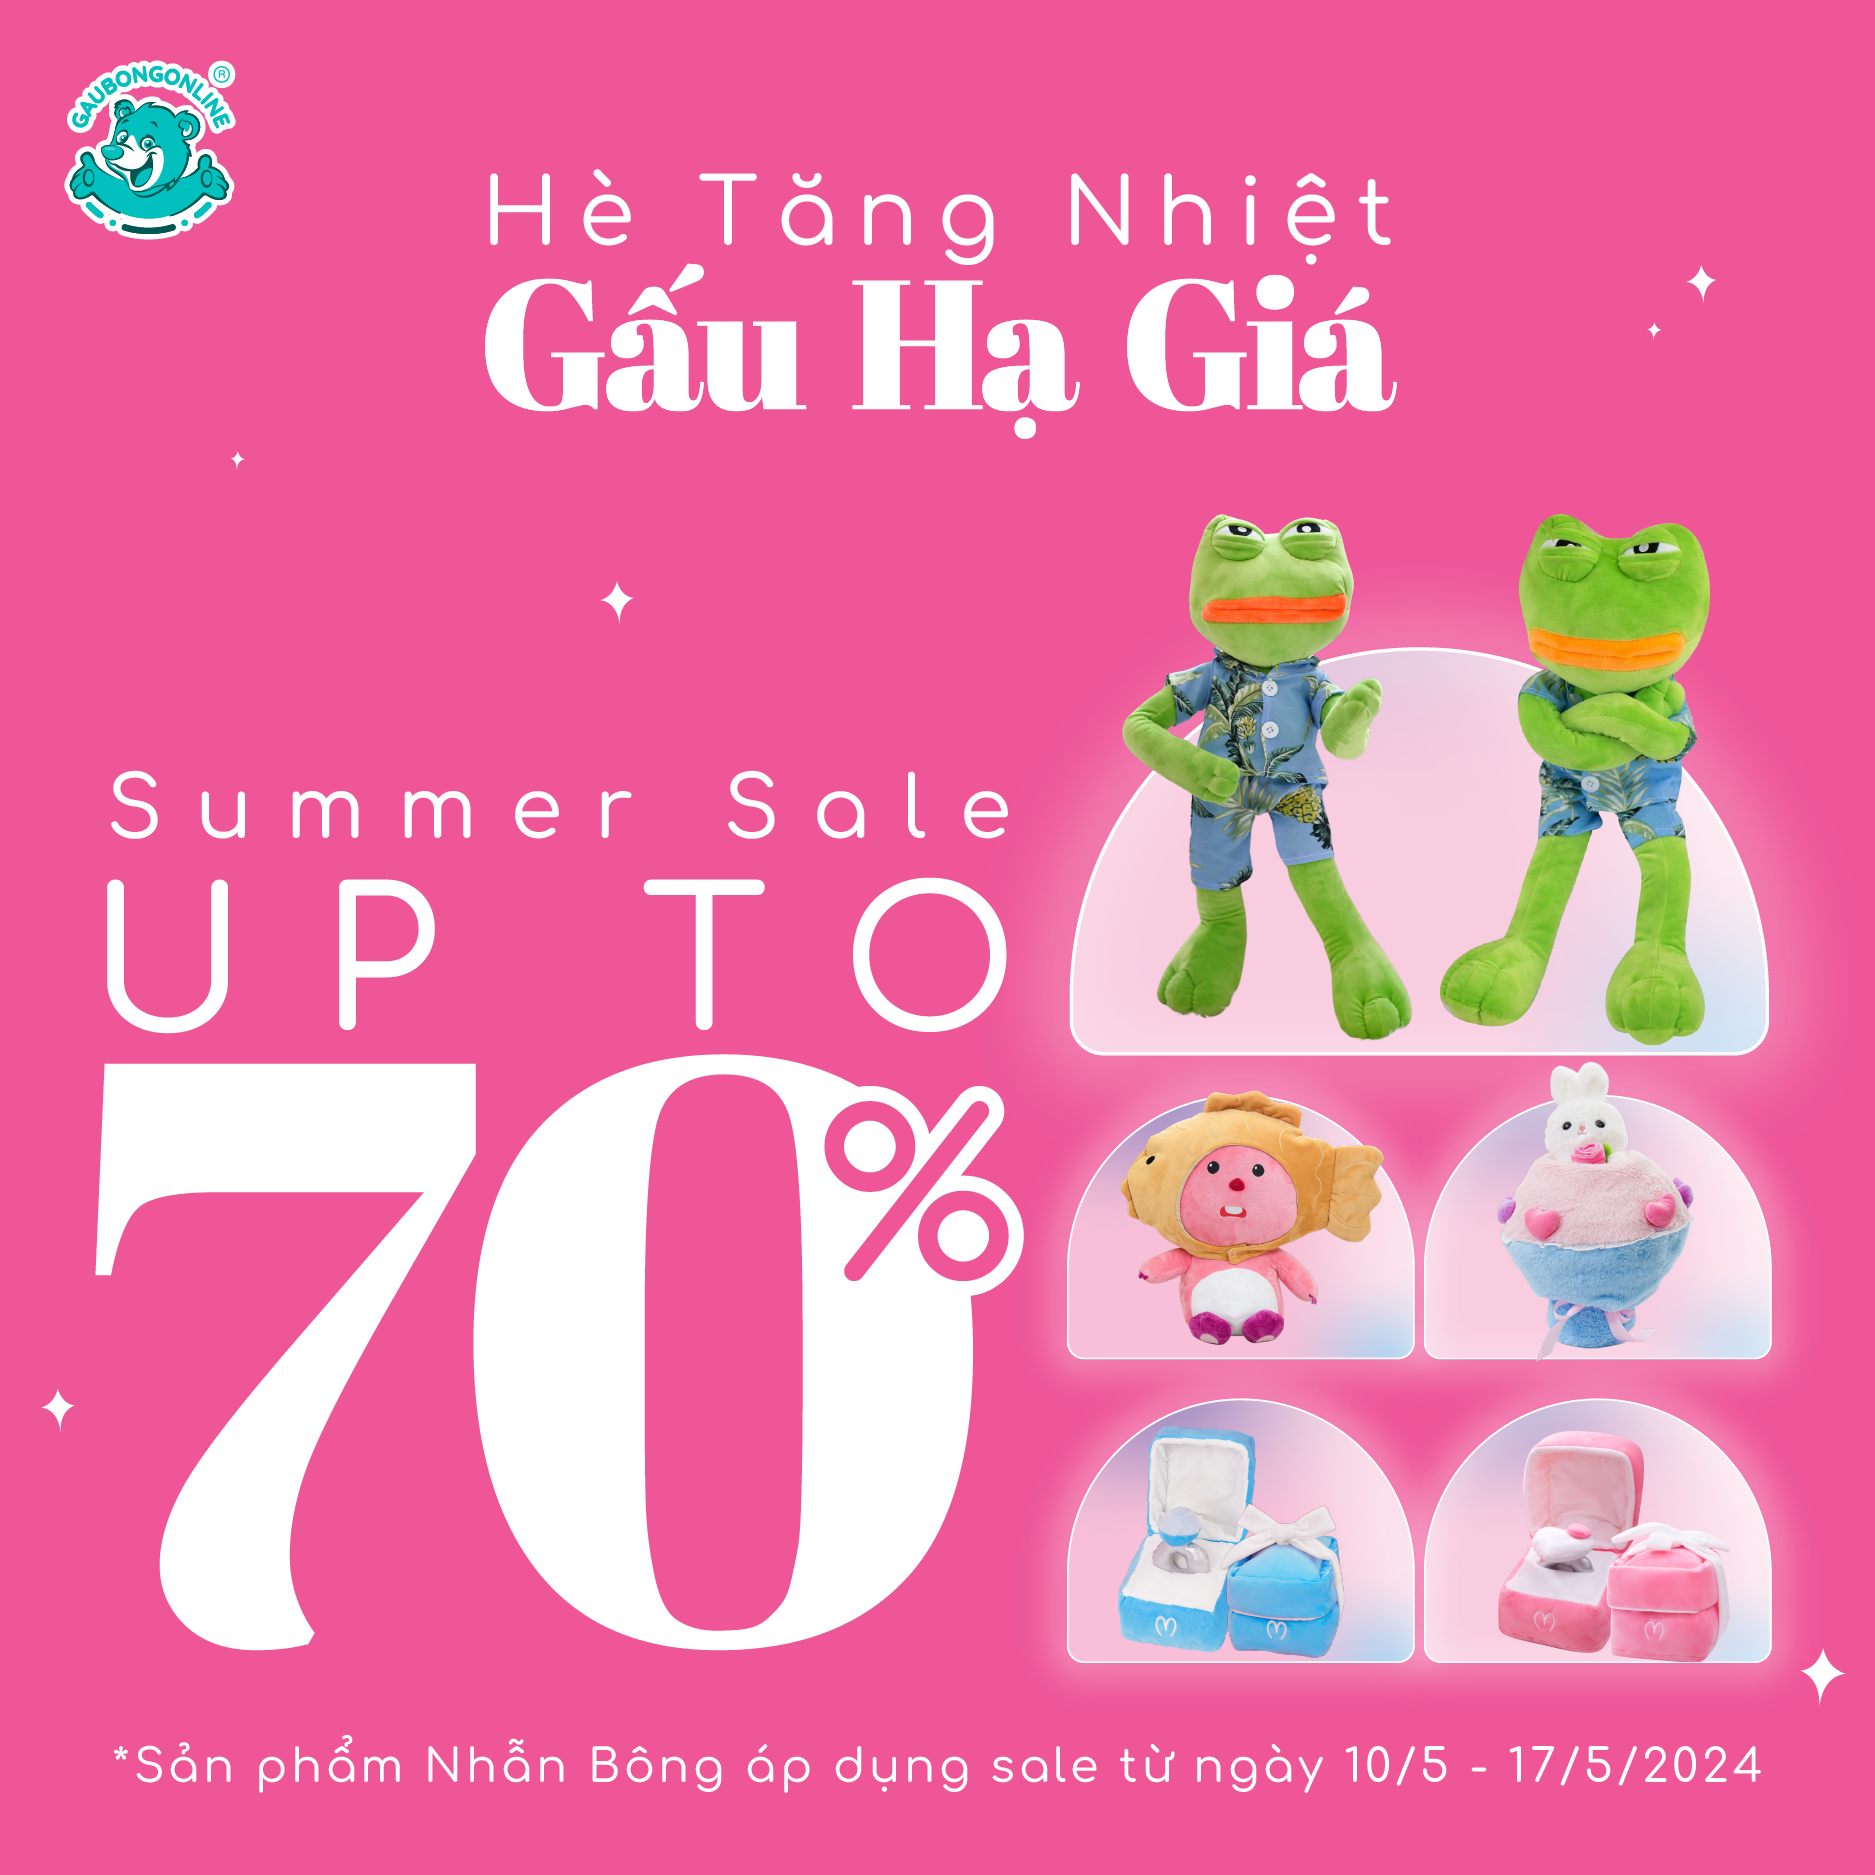 Bemori Summer Sale Up To 70%: Hè Tăng Nhiệt, Gấu “Hạ” Giá